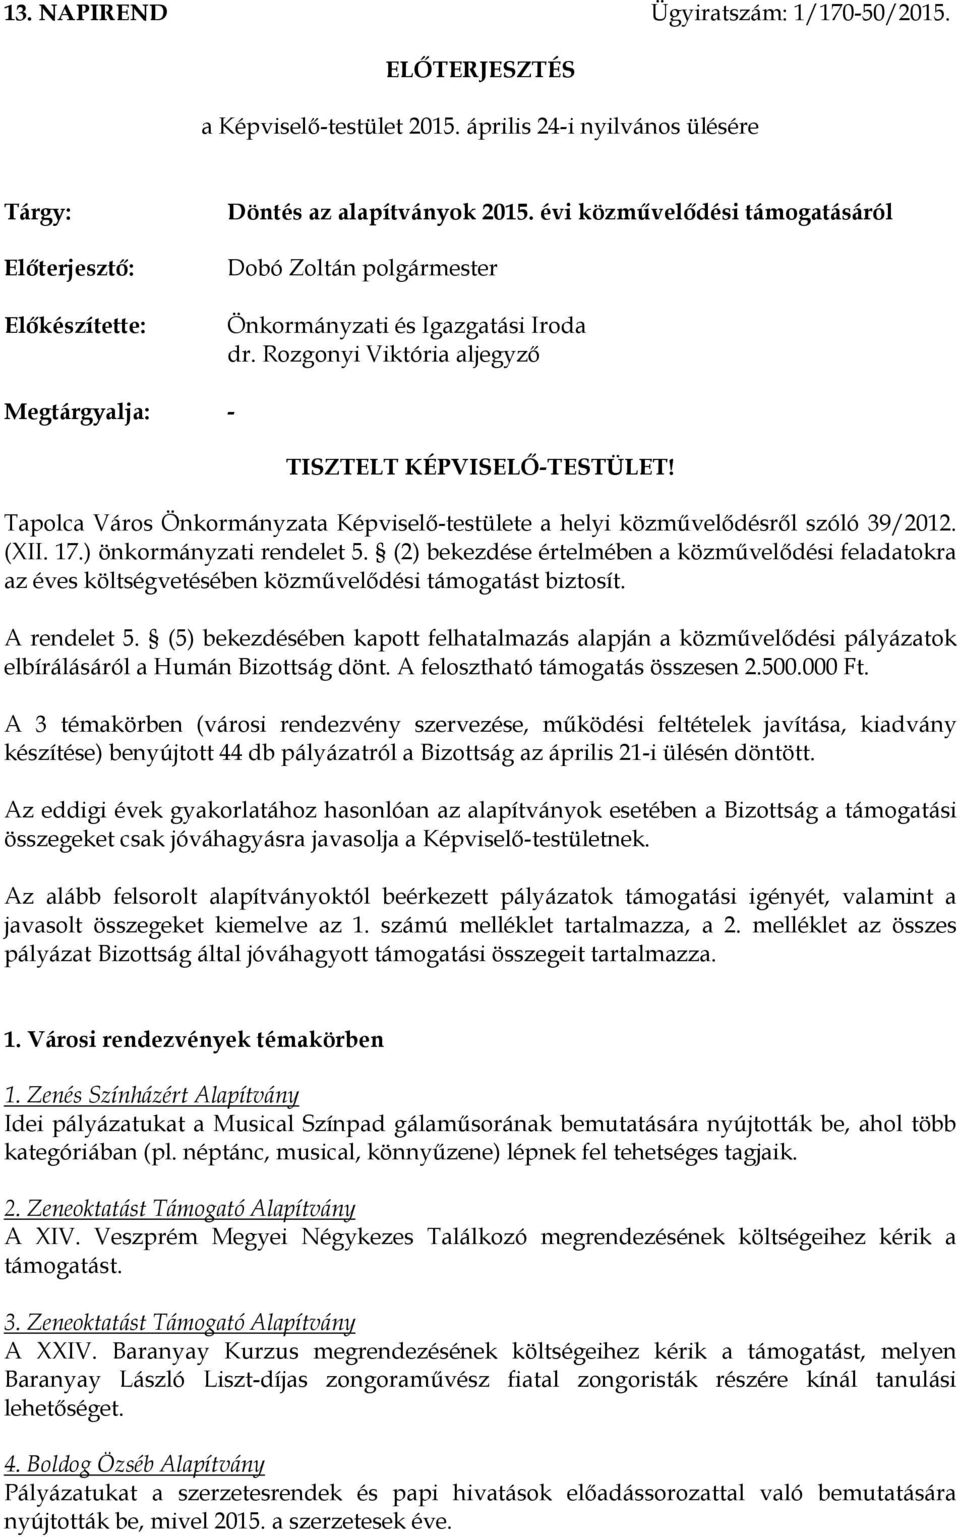 Tapolca Város Önkormányzata Képviselőtestülete a helyi közművelődésről szóló 39/2012. (XII. 17.) önkormányzati rendelet 5.